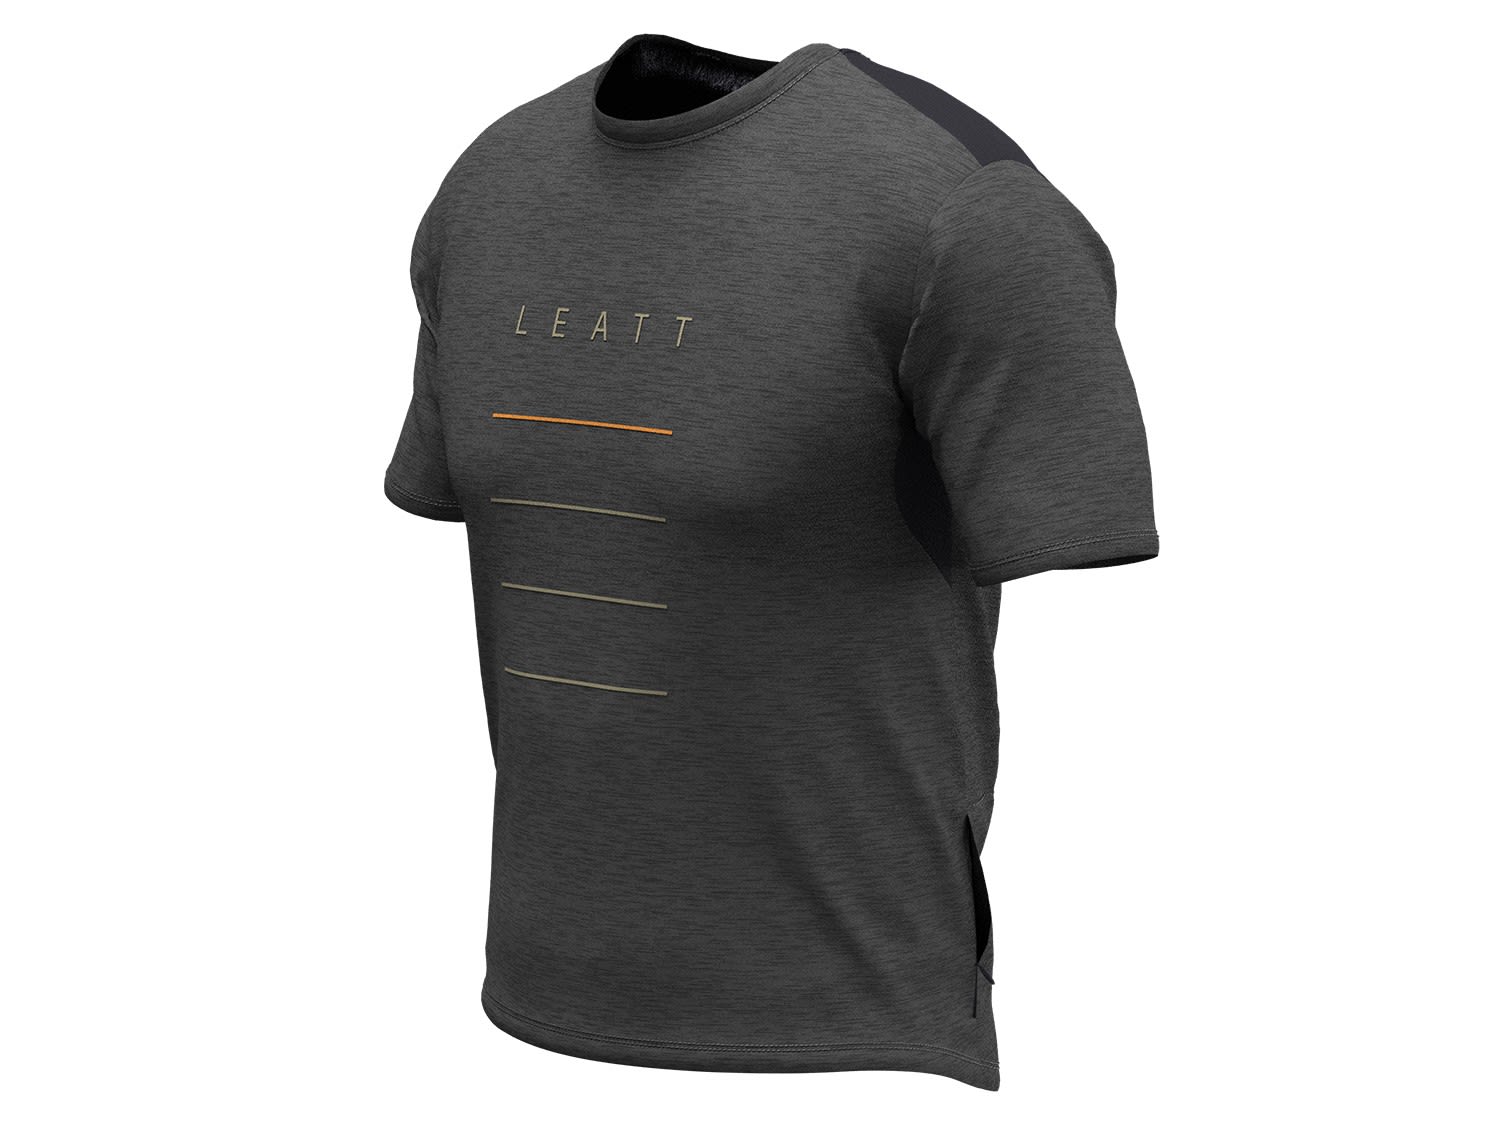 Leatt MTB Trail 1-0 Jersey Grau- Male Kurzarm-Shirts- Grsse S - Farbe Black